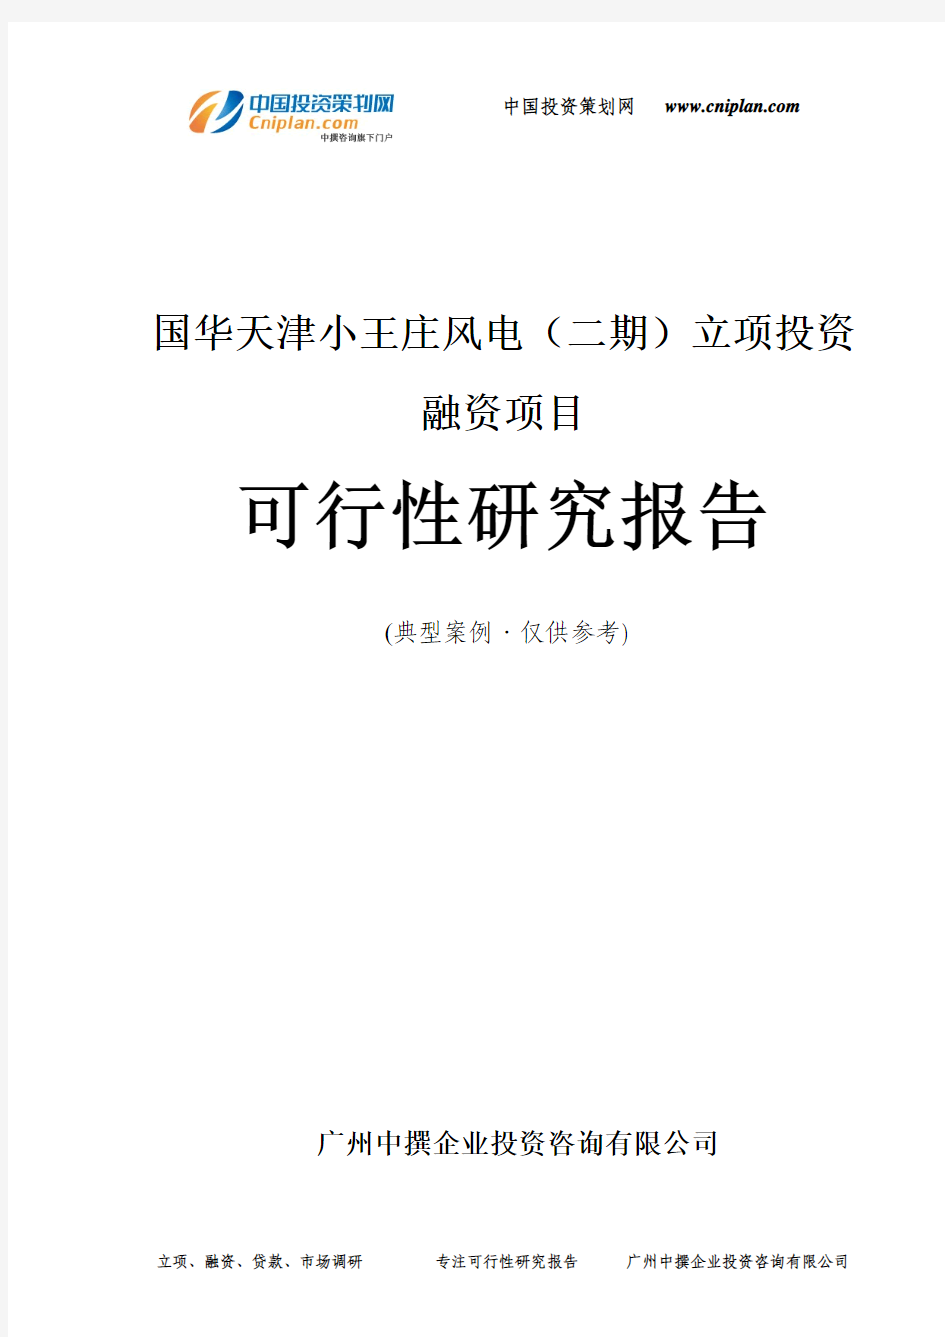 国华天津小王庄风电(二期)融资投资立项项目可行性研究报告(中撰咨询)